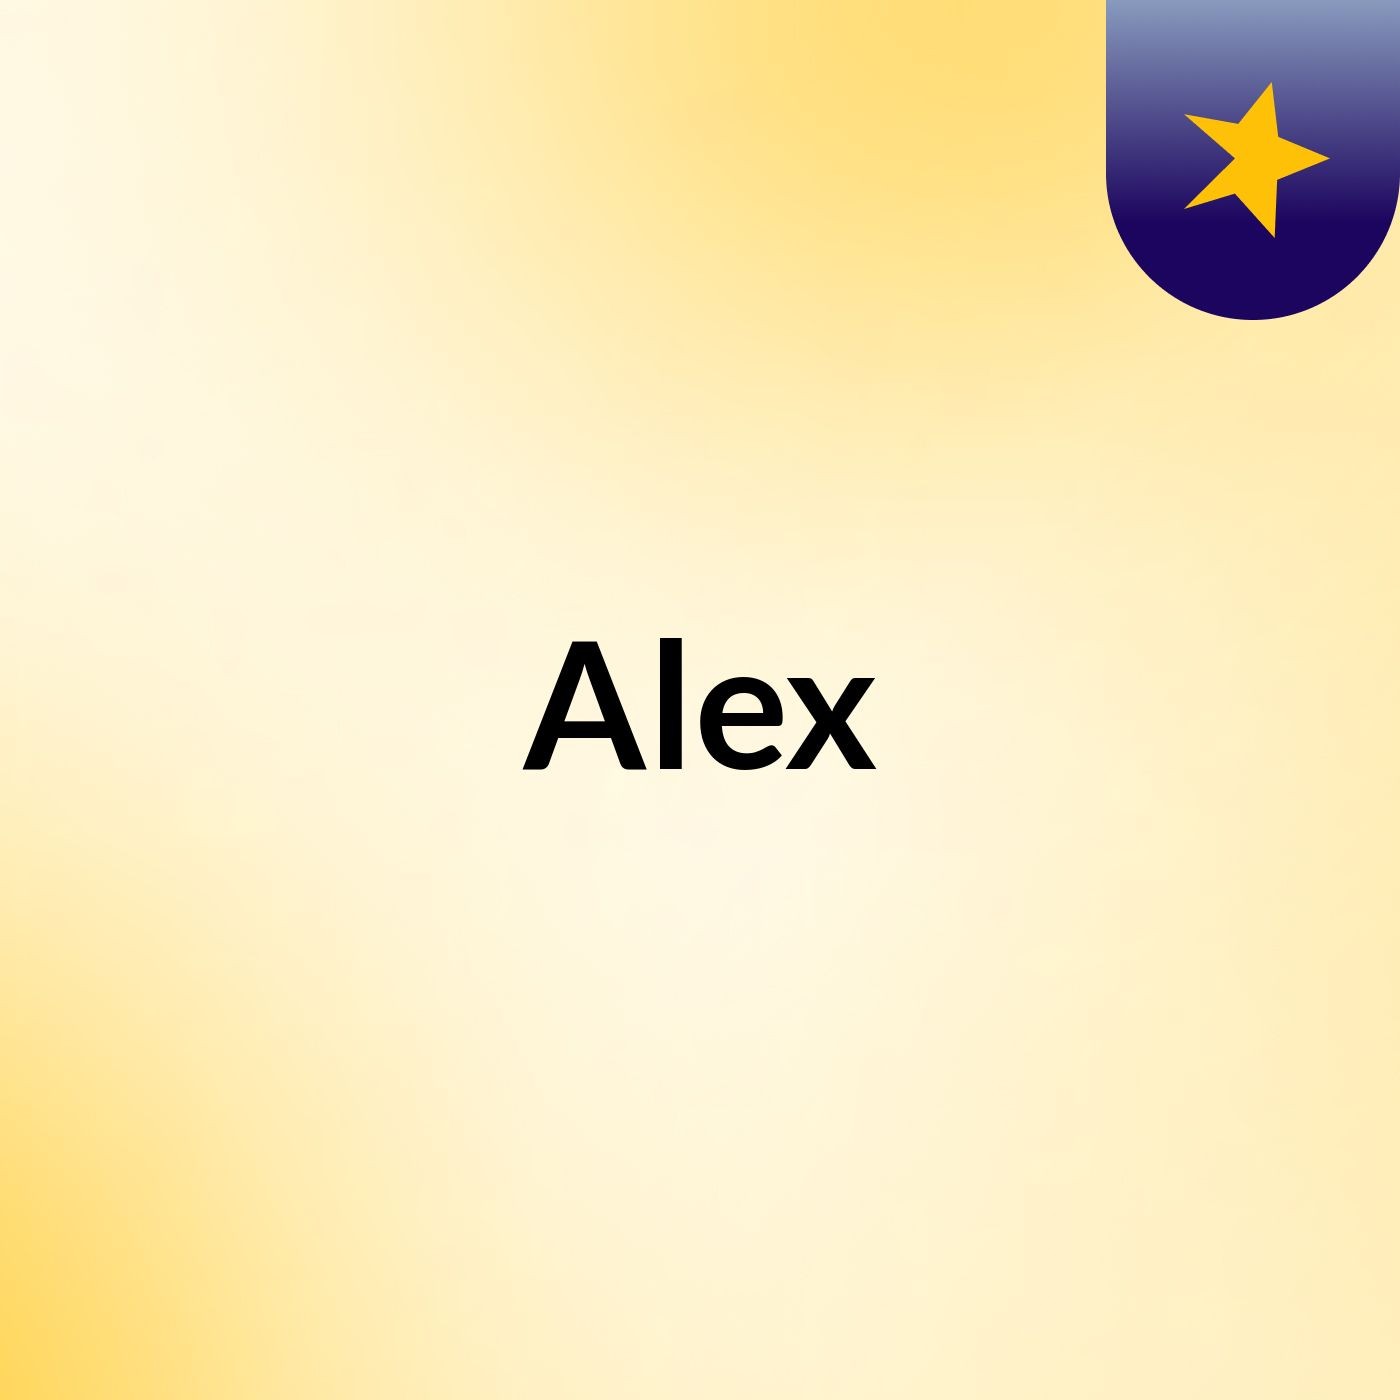 Episode 91 - Alex